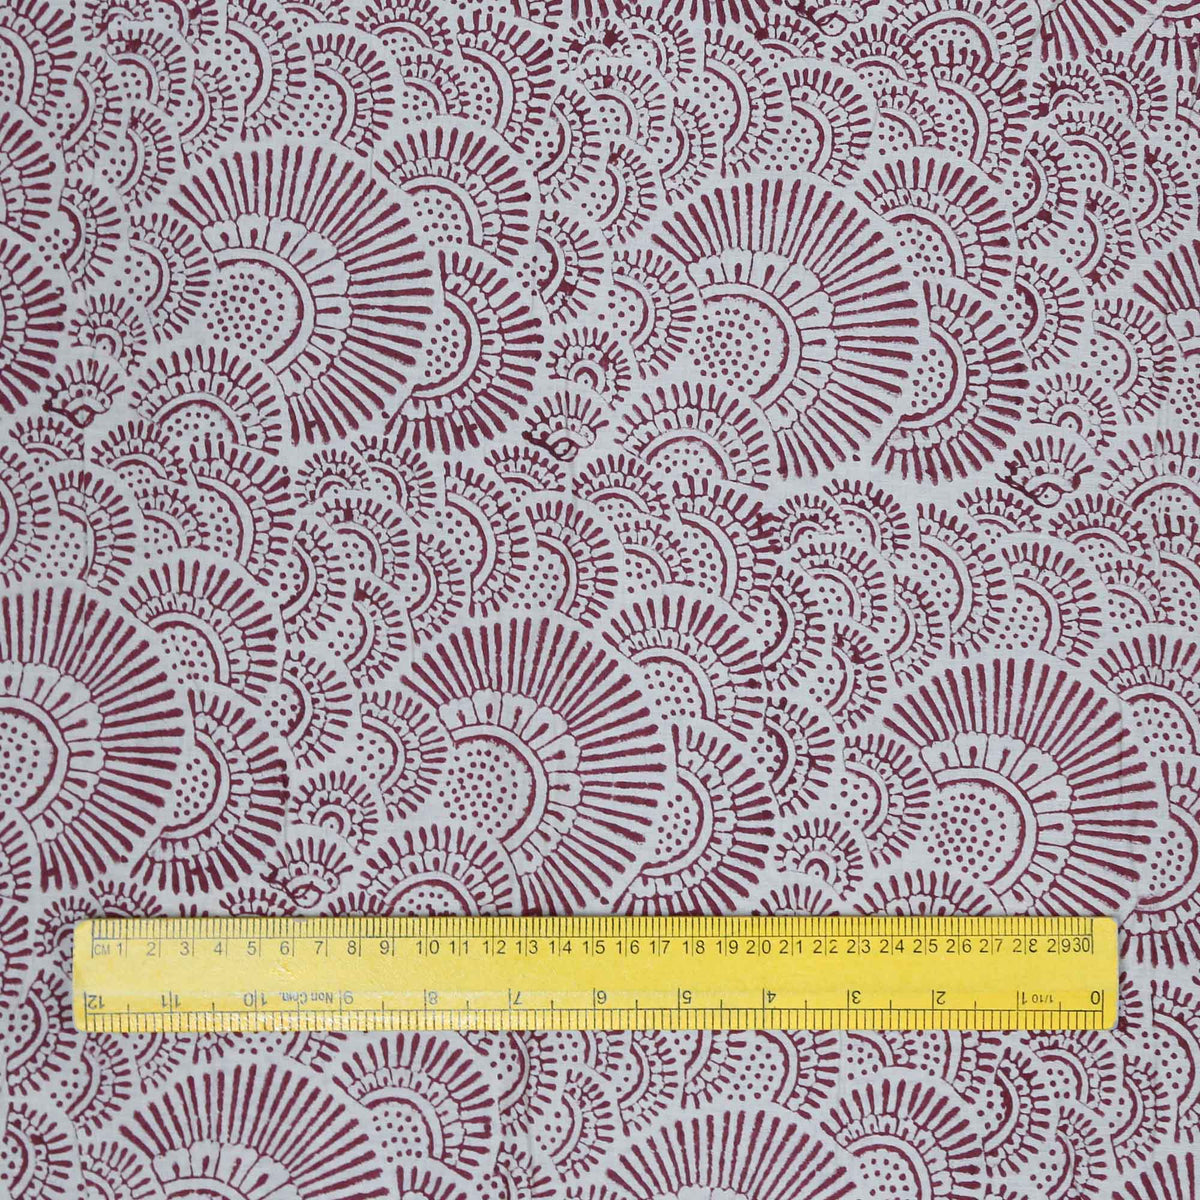 Indischer Handblockdruck mit rotem Henna-Muster auf cremefarbenem Voile-Stoff aus 100 % Baumwolle, Design 354